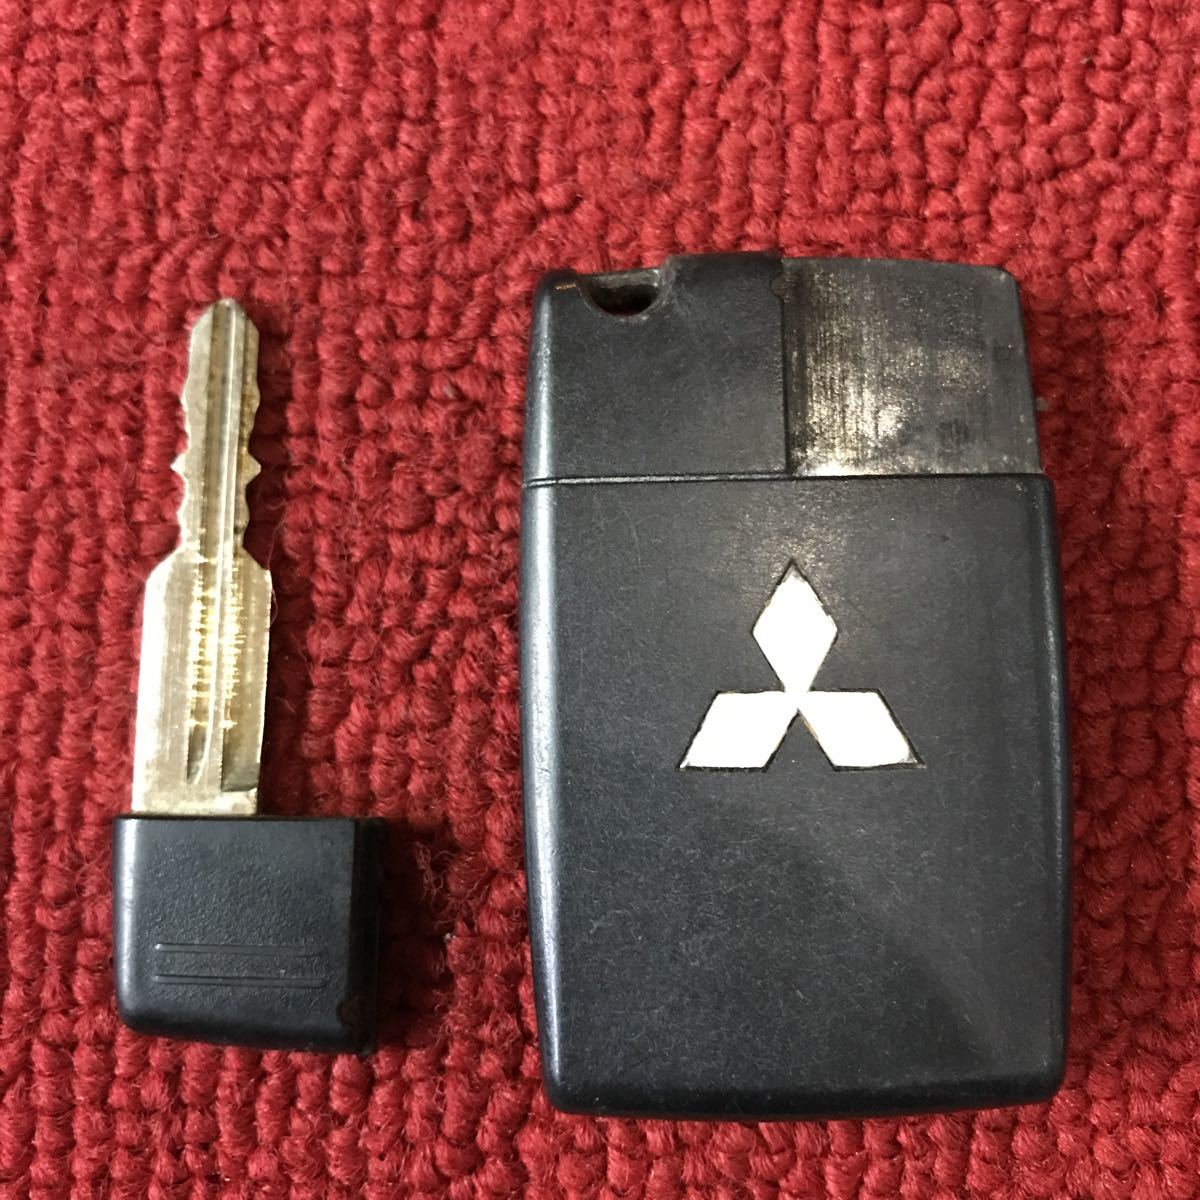  Mitsubishi оригинальный дистанционный ключ "умный" ключ 3 кнопка работа проверка завершено NN755